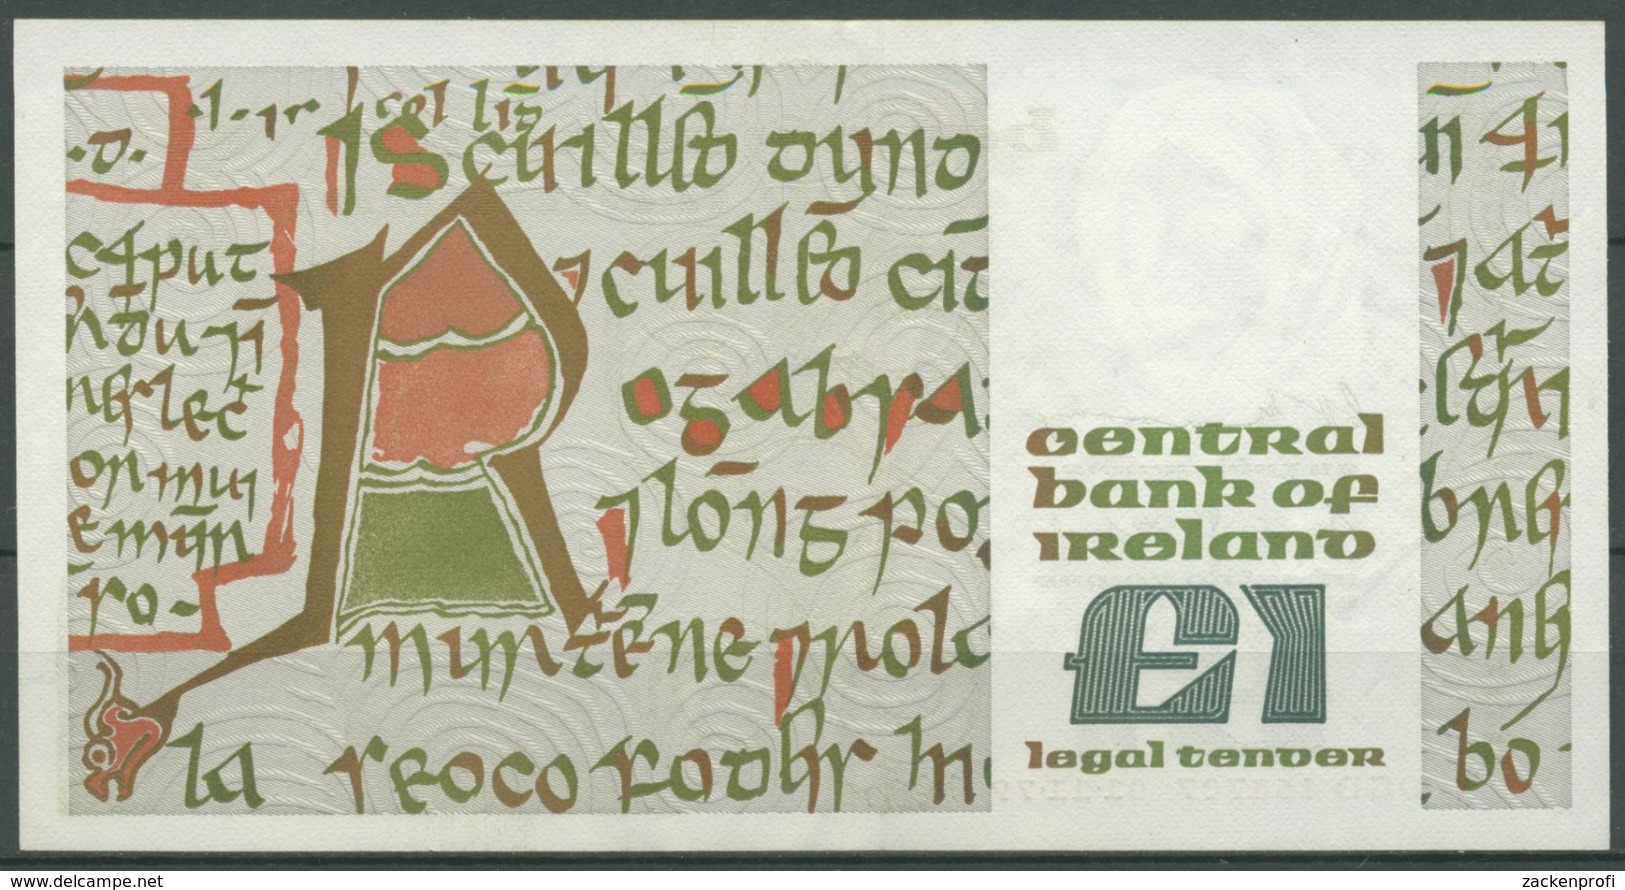 Irland 1 Pound 01.11.1979, Queen Medb, KM 70 B, Gebraucht (K65) - Irland